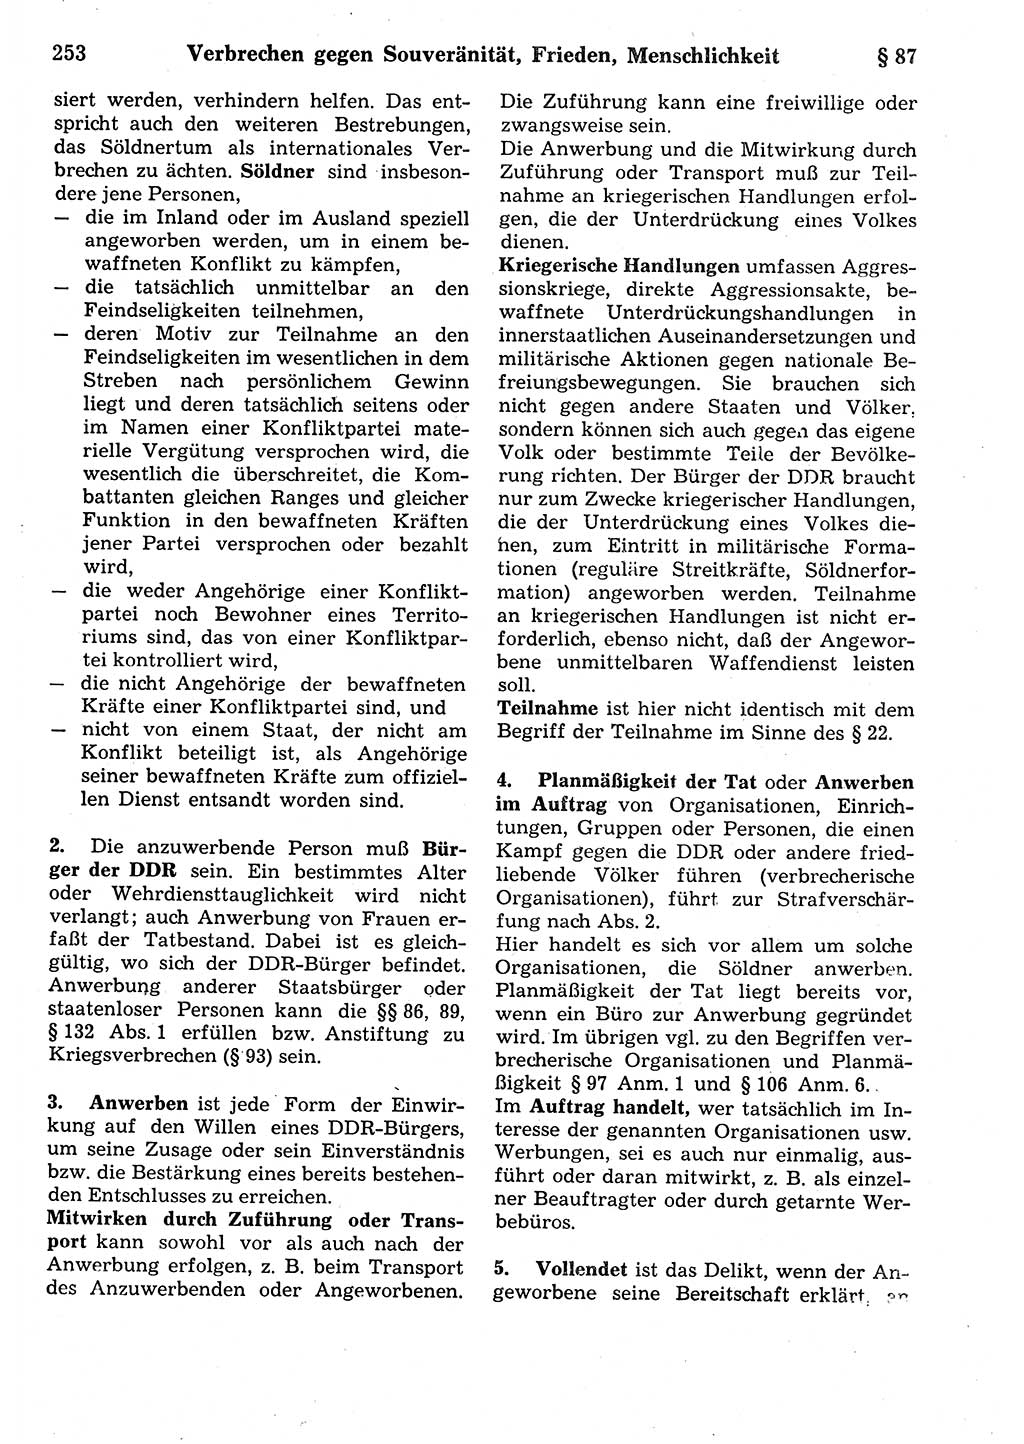 Strafrecht der Deutschen Demokratischen Republik (DDR), Kommentar zum Strafgesetzbuch (StGB) 1987, Seite 253 (Strafr. DDR Komm. StGB 1987, S. 253)